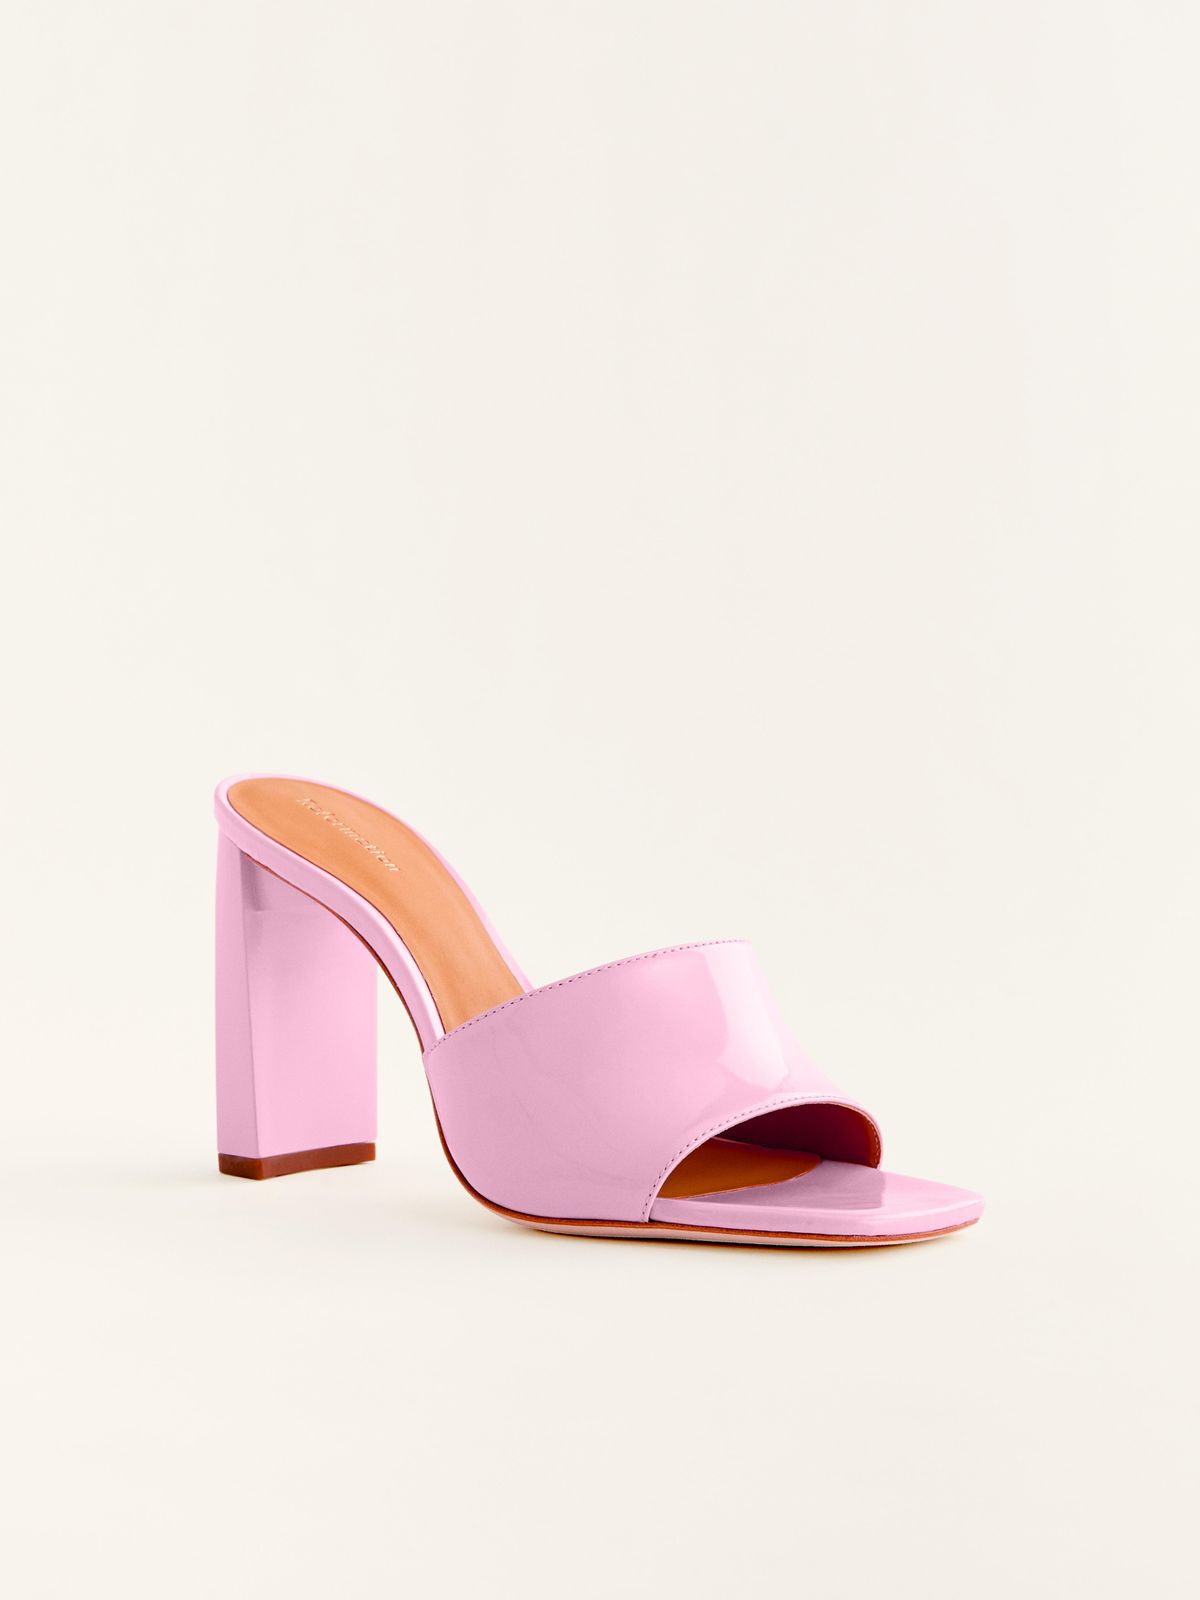 Georgi Block Heel Sandal in Pop Pink Patent